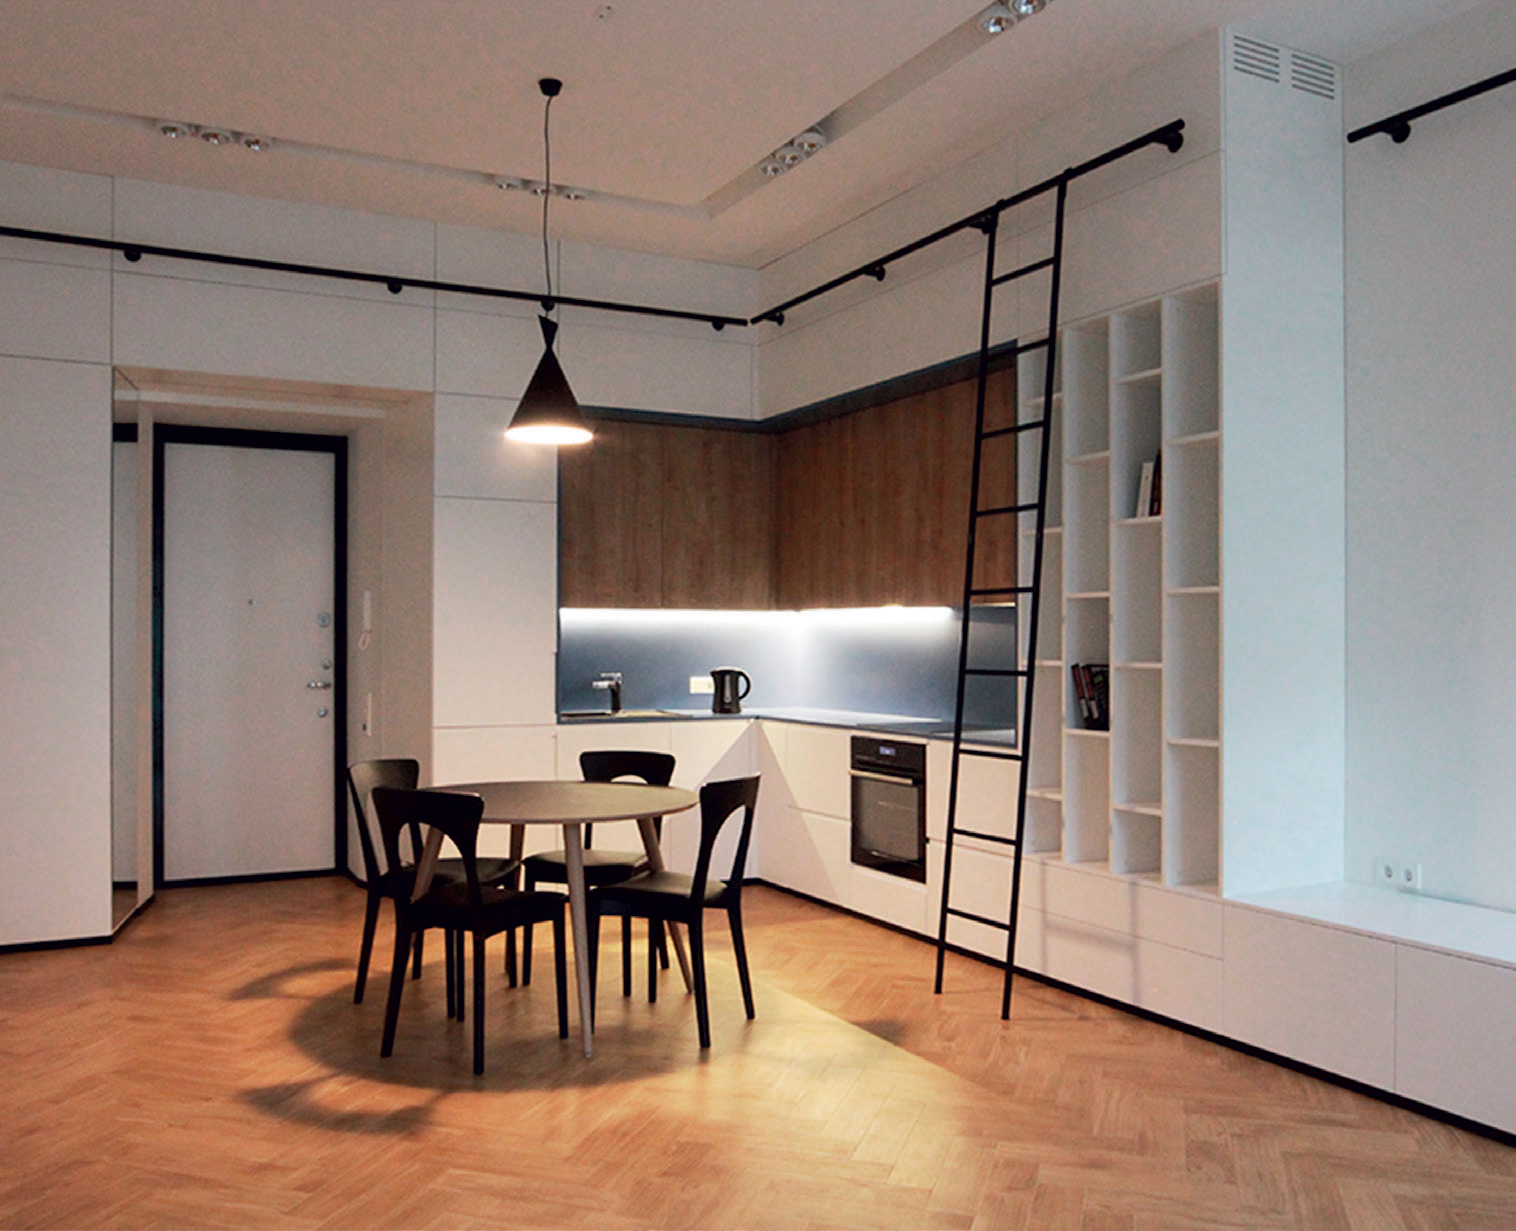 Atvira virtuvė savo medžiagiškumu puikiai dera tiek su baldais, tiek su grindimis. Aut. „Kubinis metras“